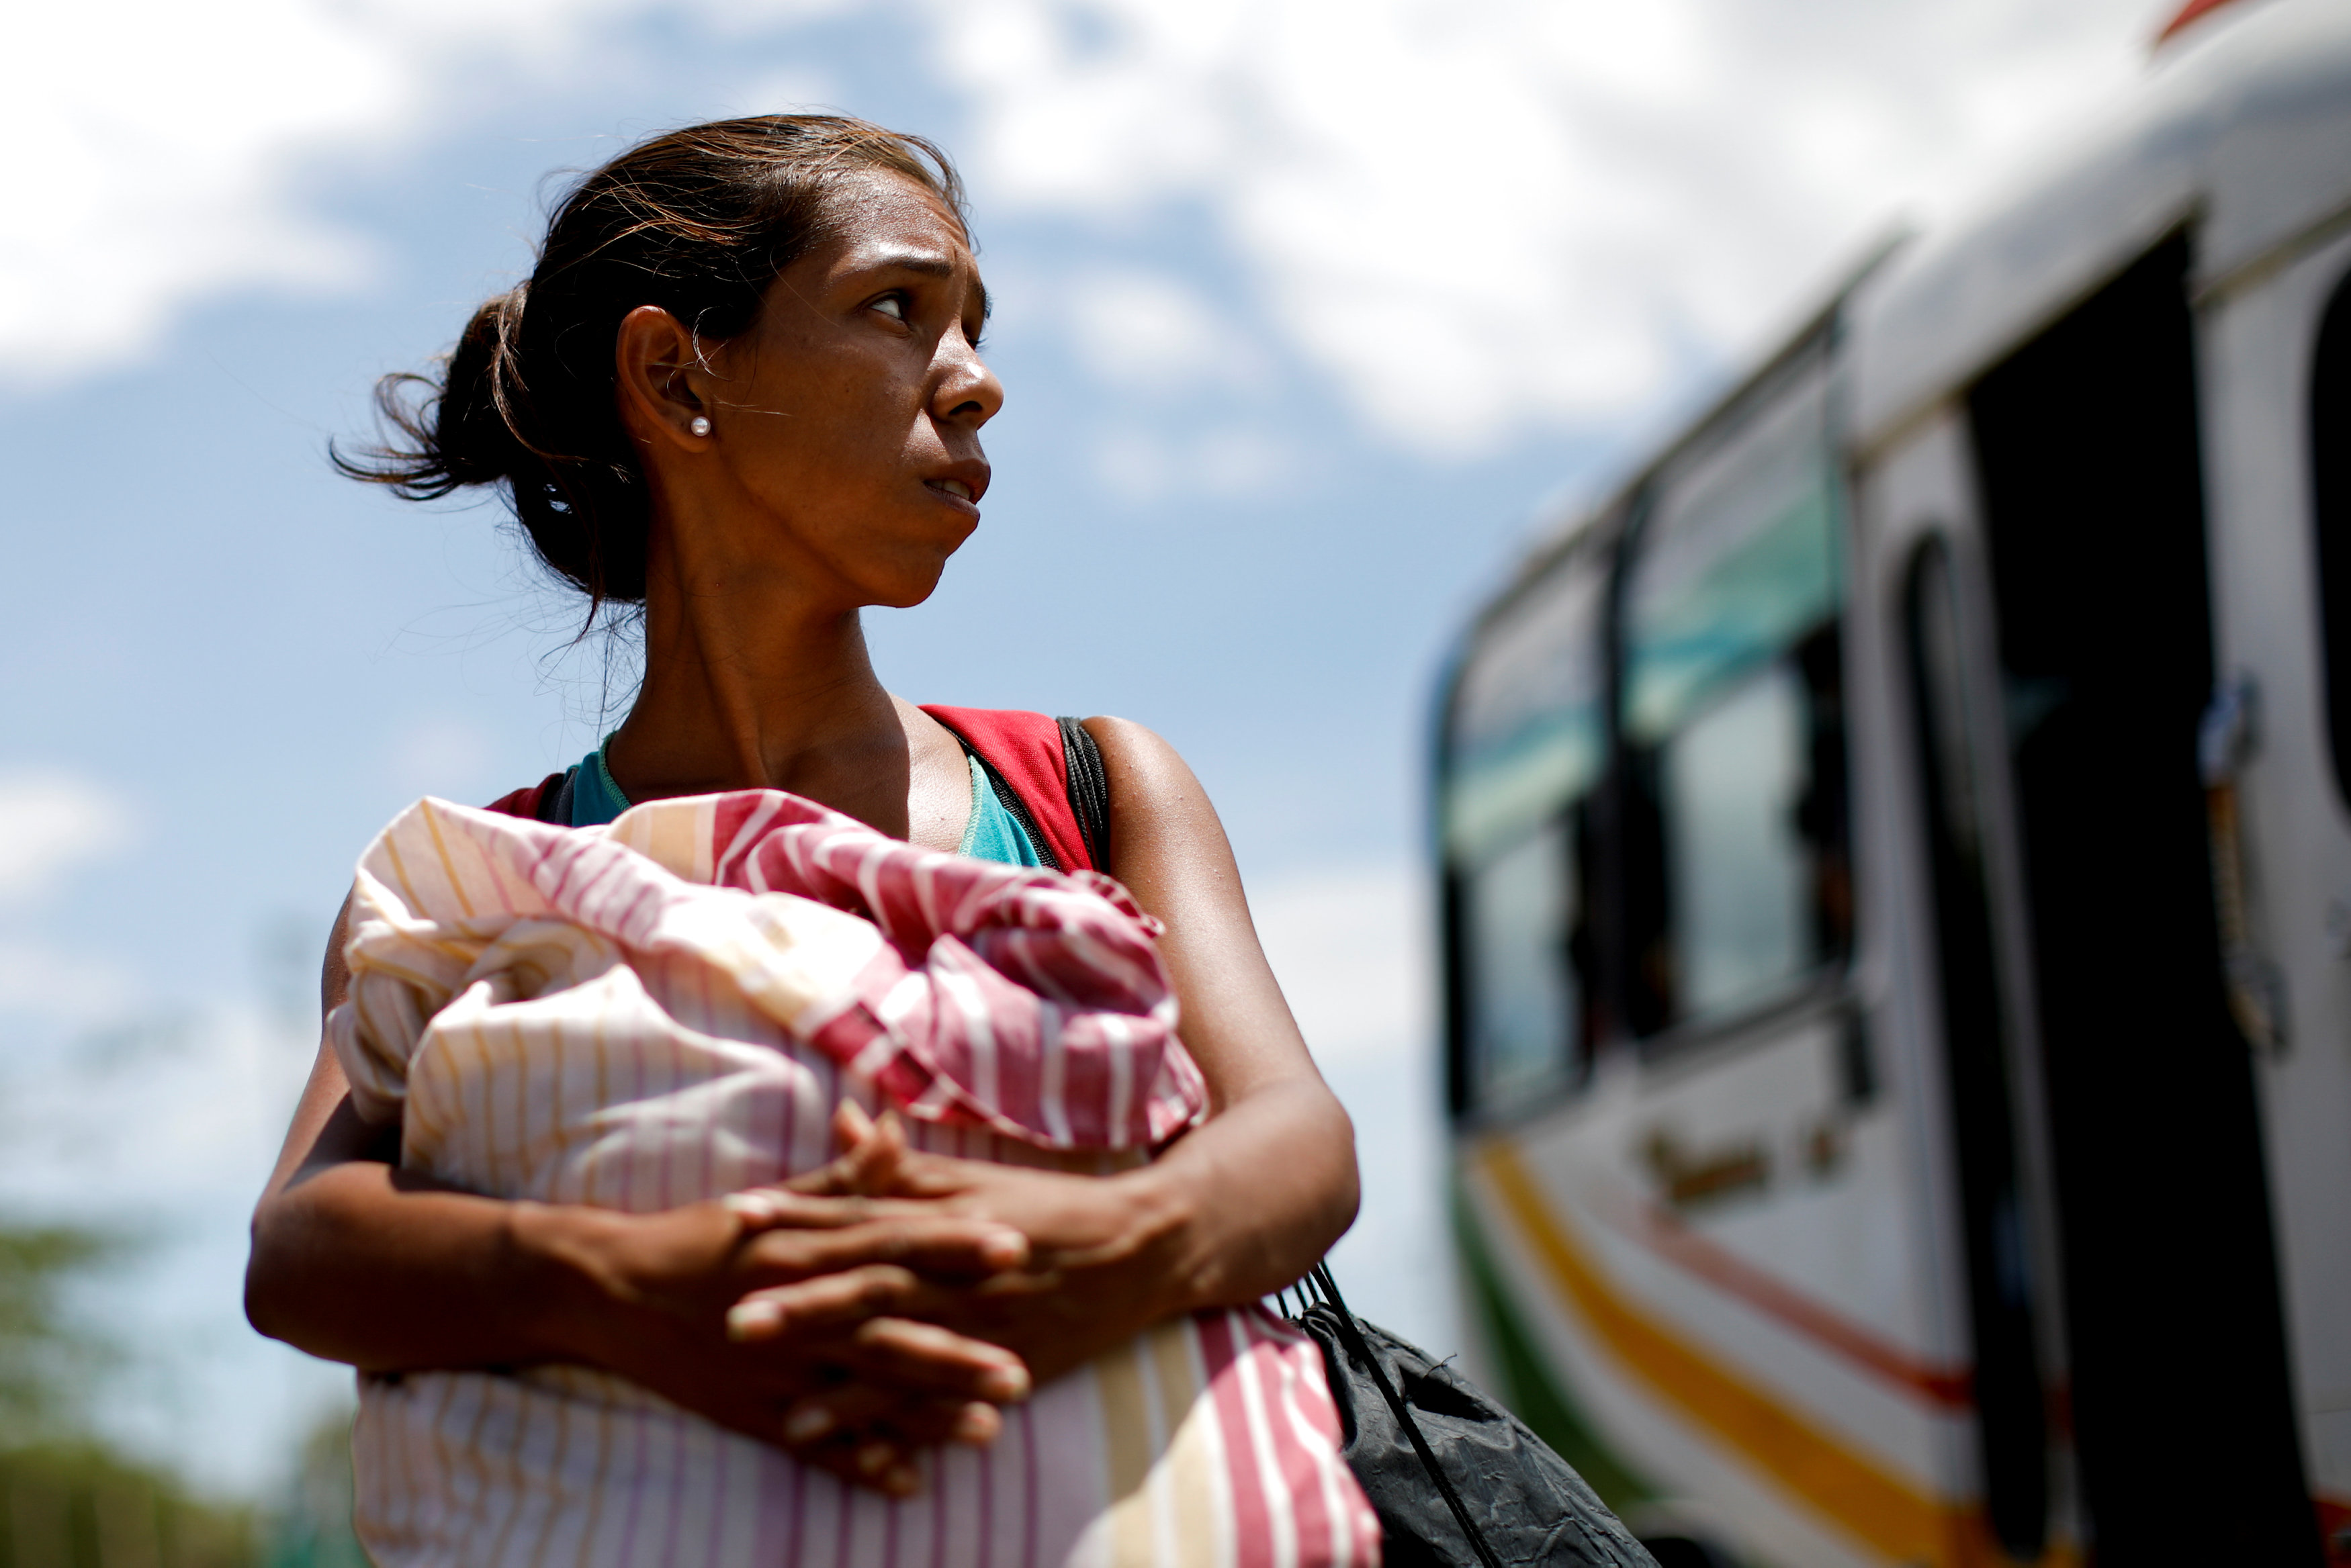 La crisis migratoria de Venezuela es una amenaza regional que exige acción conjunta, alerta la OEA